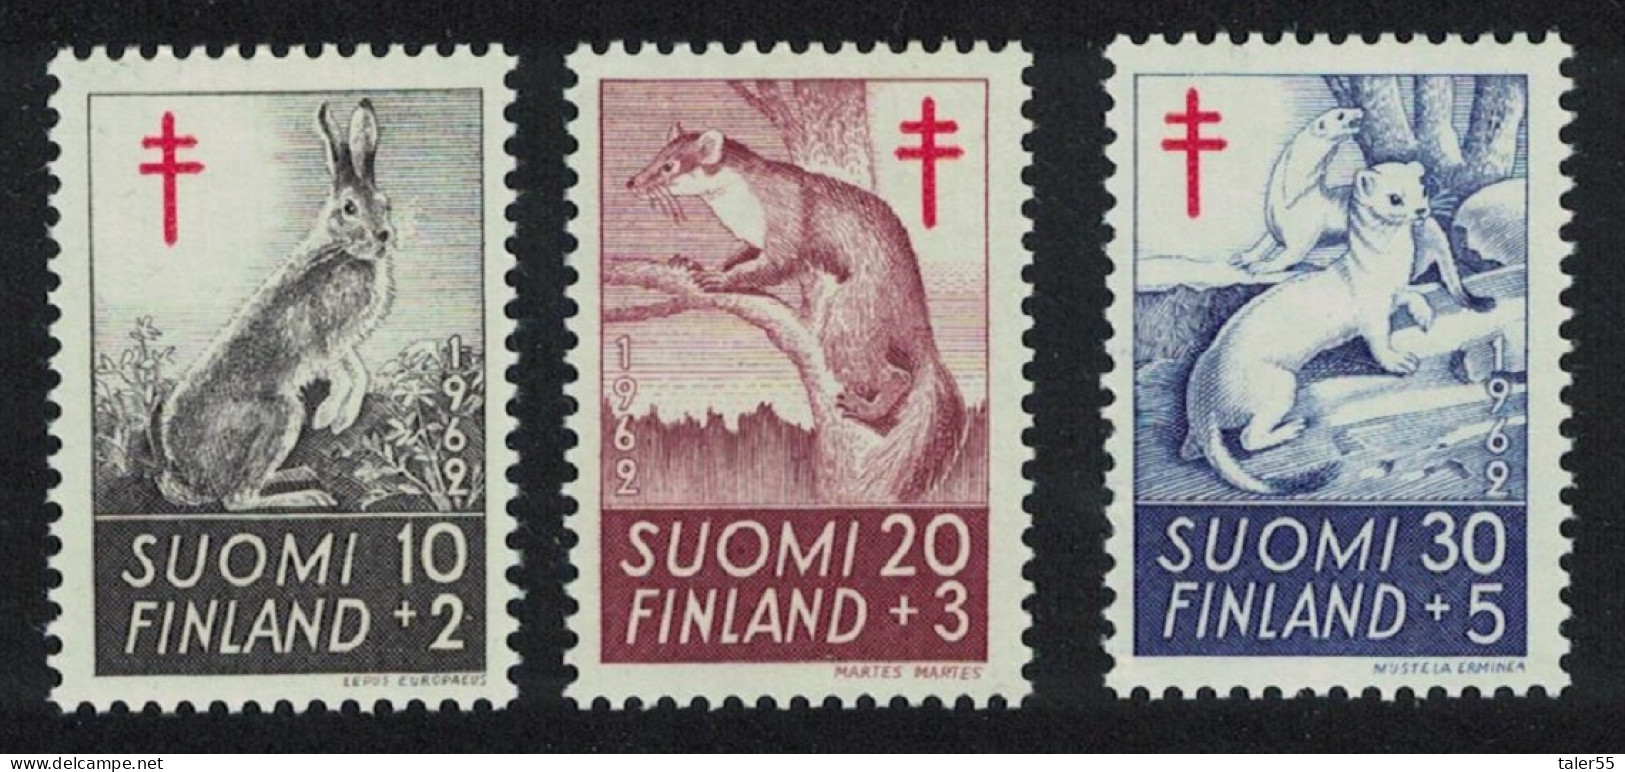 Finland Hare Marten Stoat 3v 1962 MNH SG#642-644 Sc#B163-B165 - Nuevos